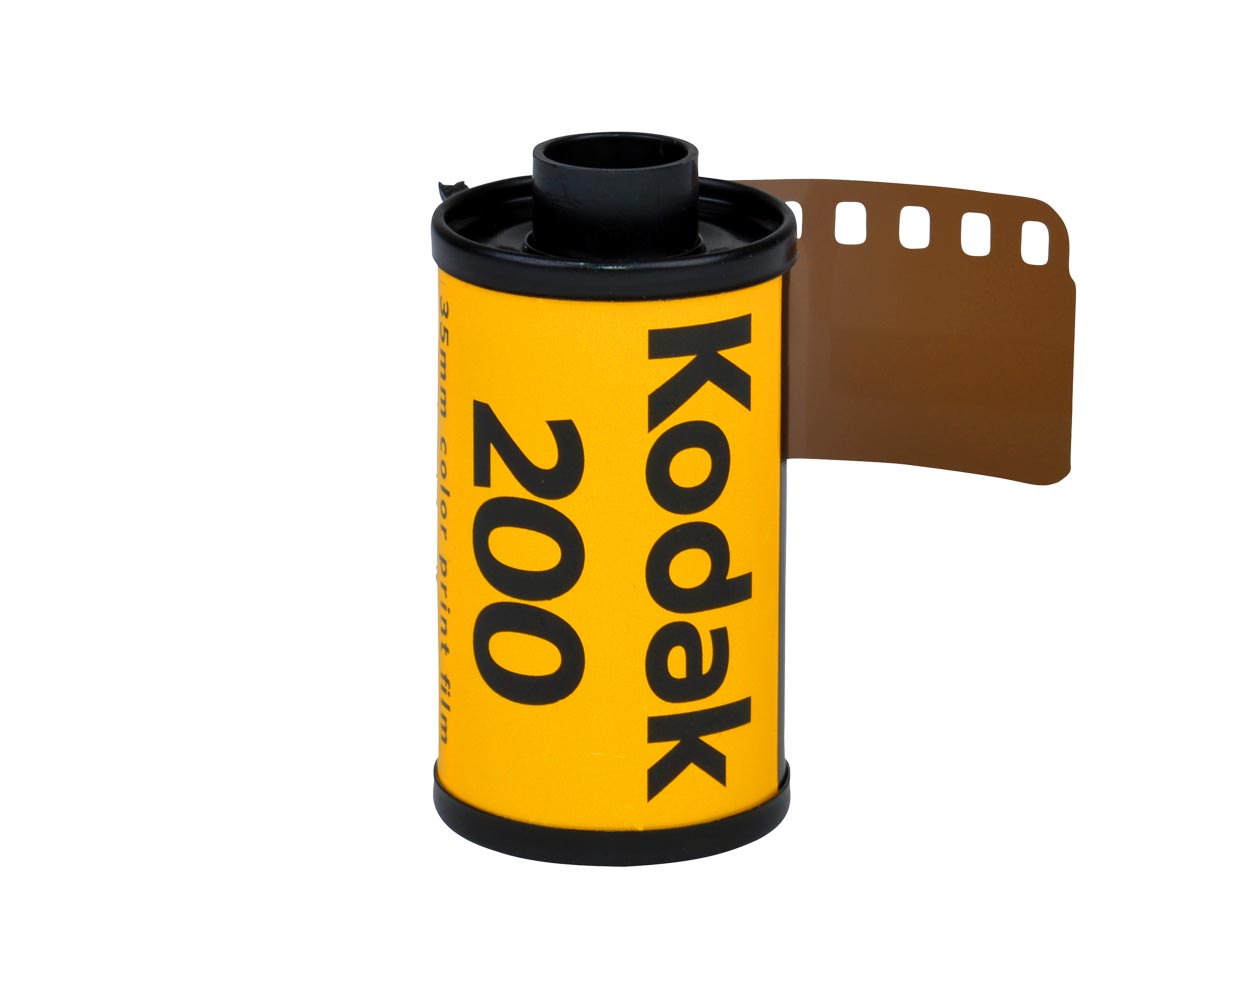 Pellicule couleur 35mm Kodak Gold 200iso 36poses